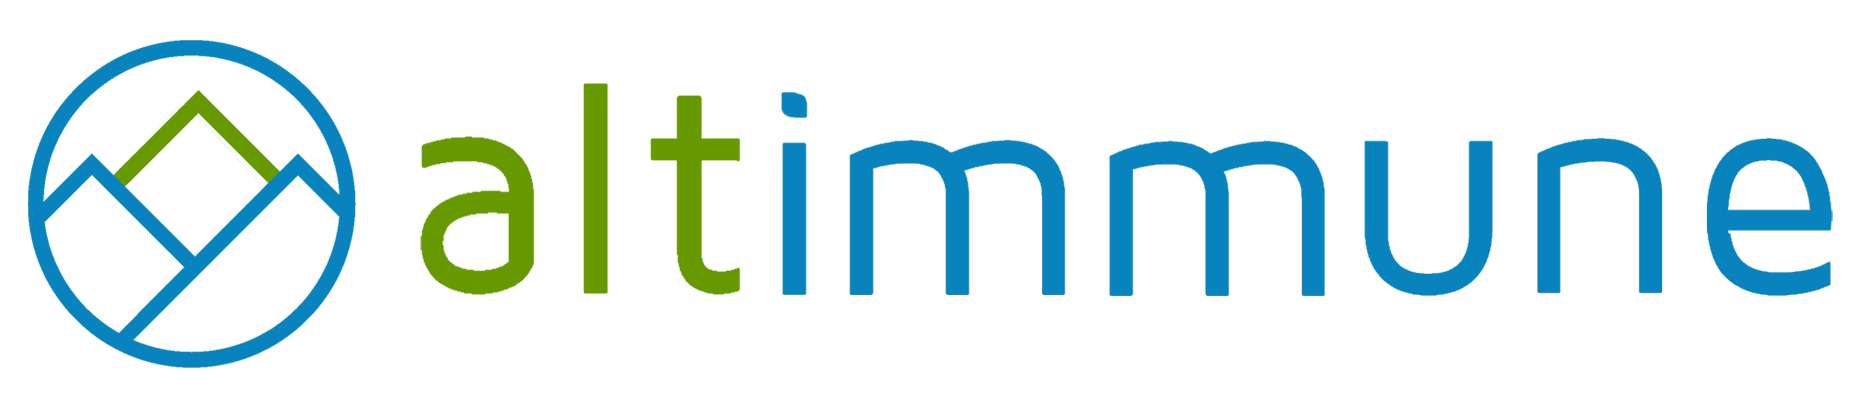 Altimmune, Inc.